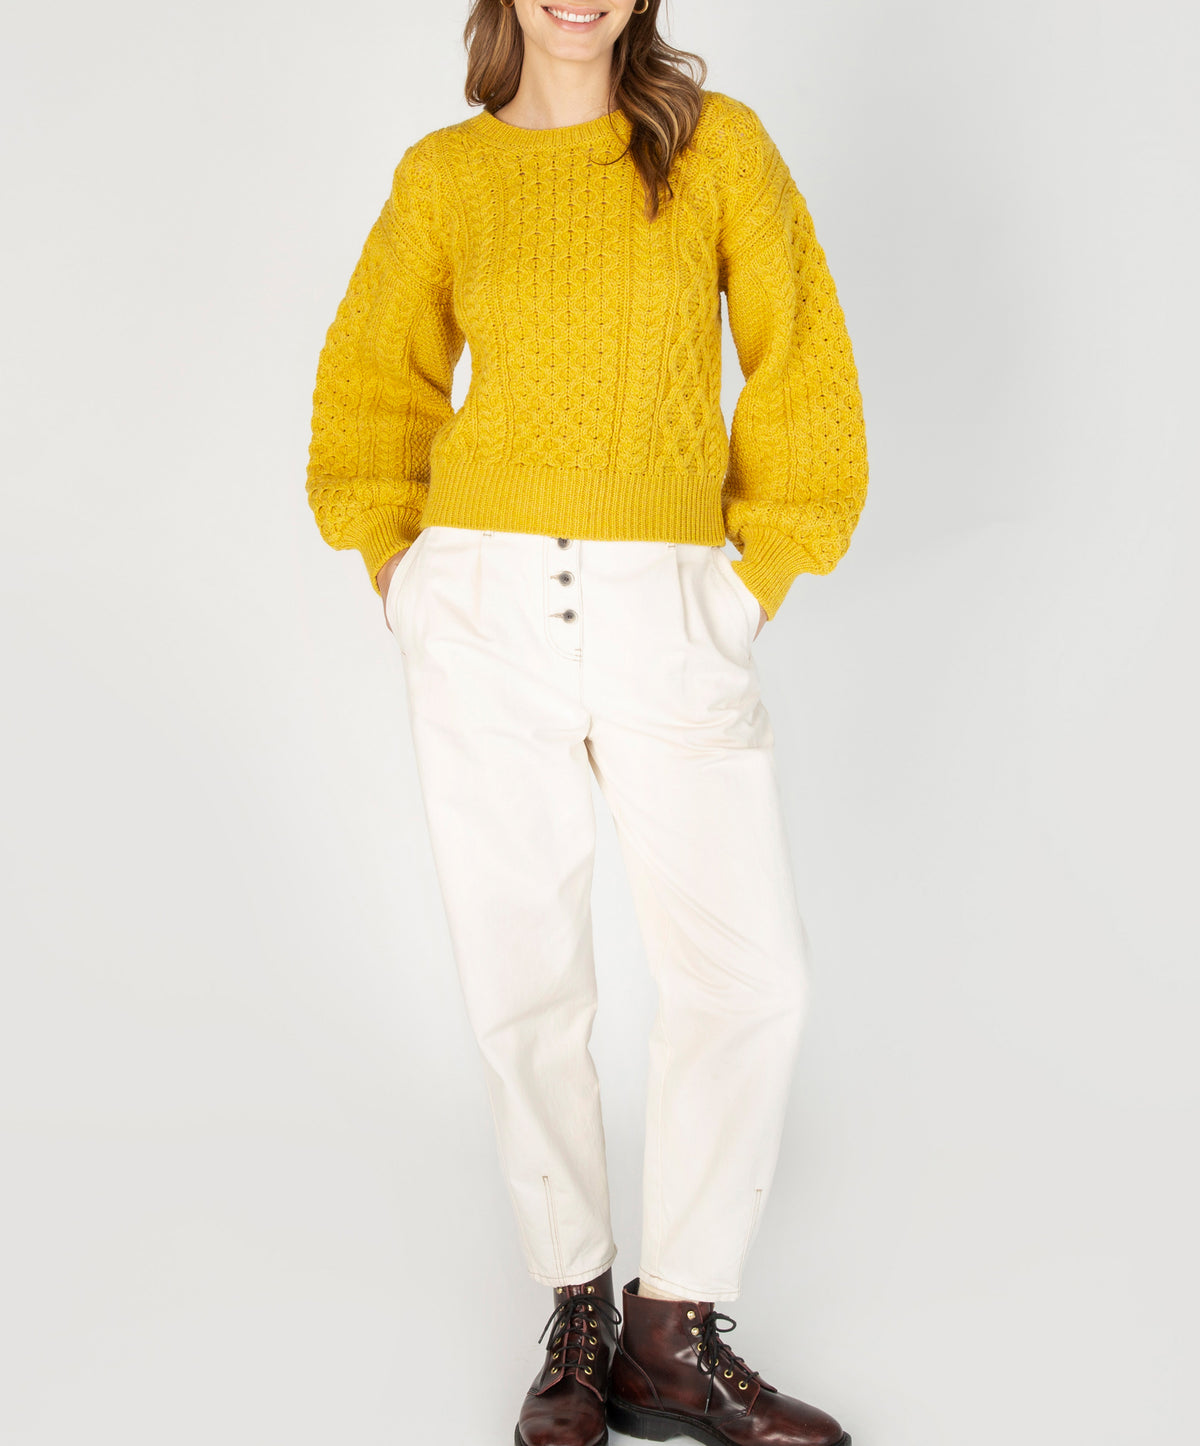 Traditional Aran Sweaters for women and men IrelandsEye Knitwear